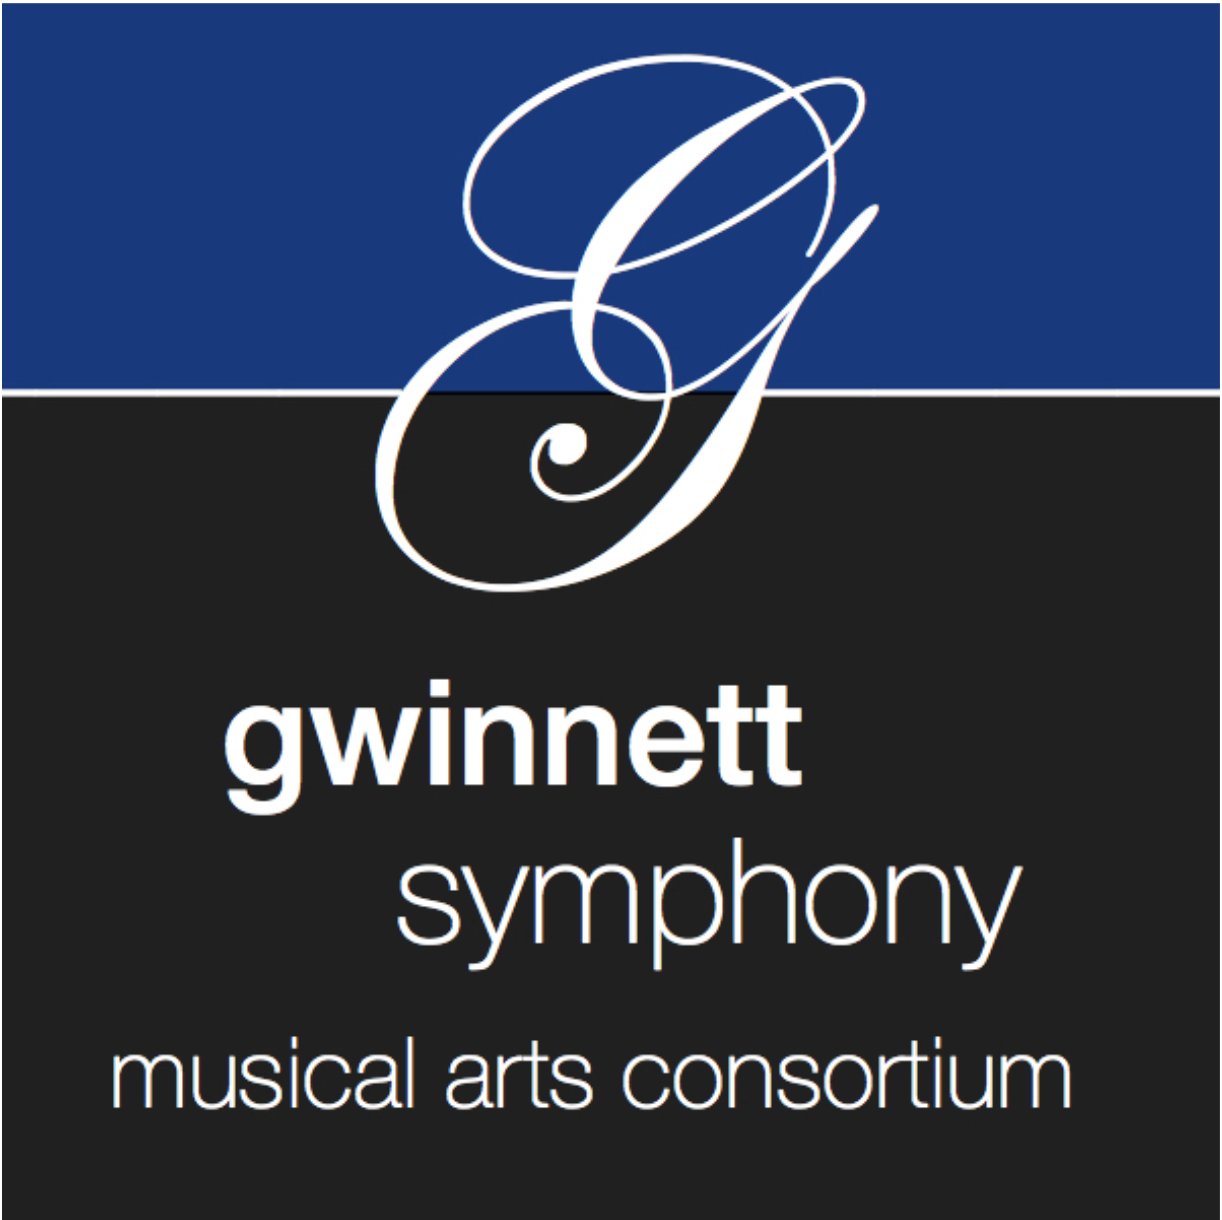 Gwinnett Calendar 2022 Gwinnett Symphony Musical Arts Consortium